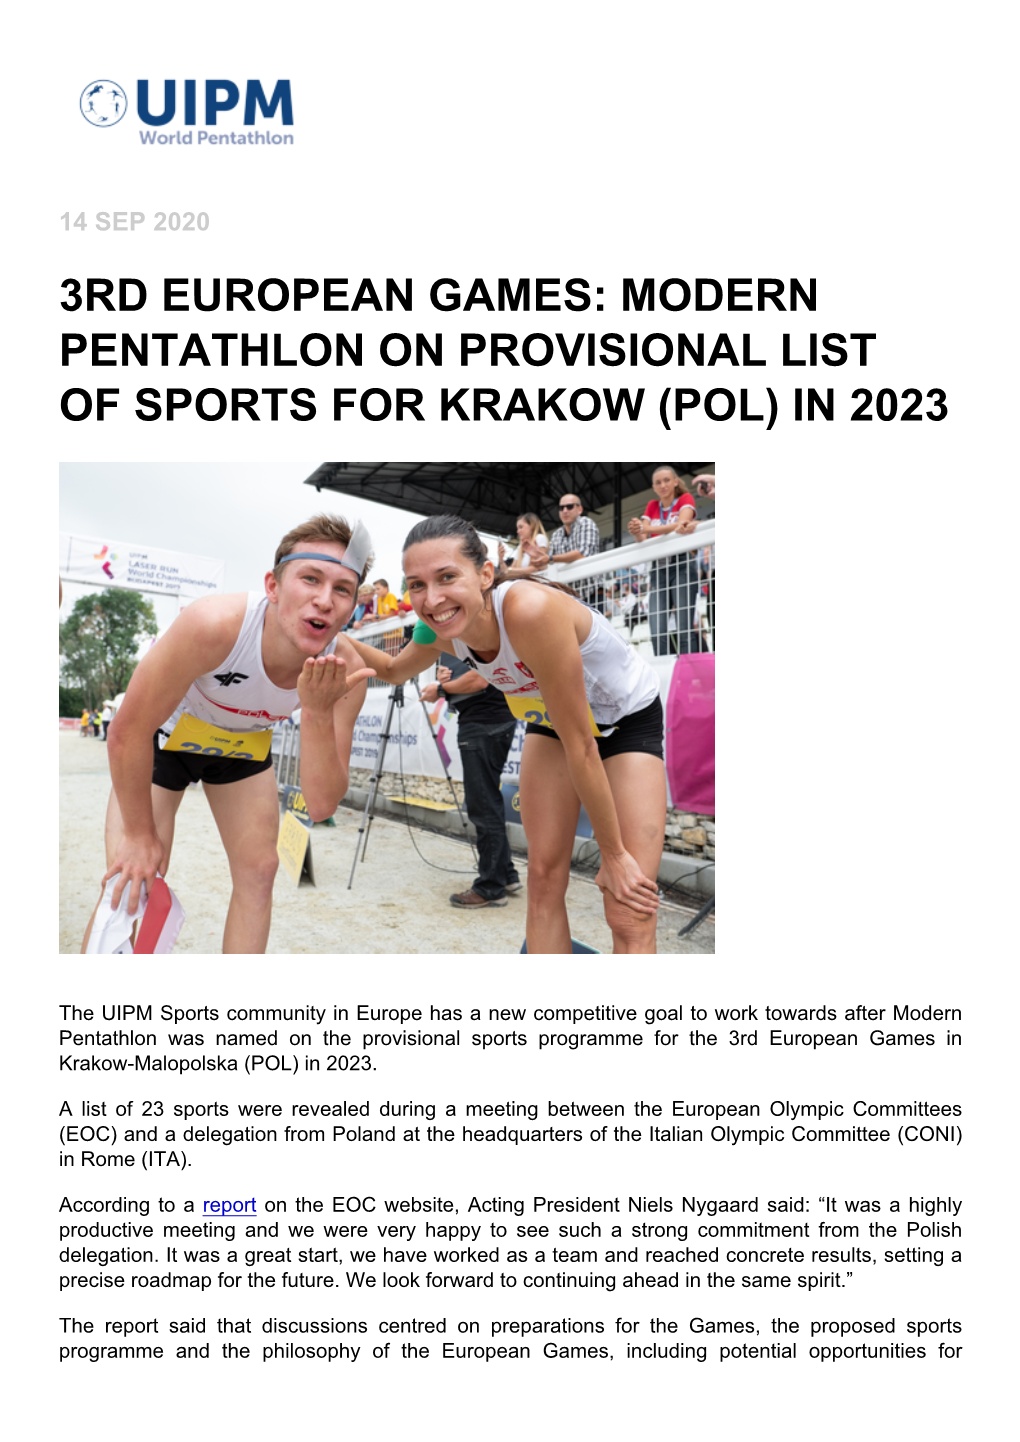 3Rd European Games: Modern Pentathlon on Provisional List of Sports for Krakow (Pol) in 2023